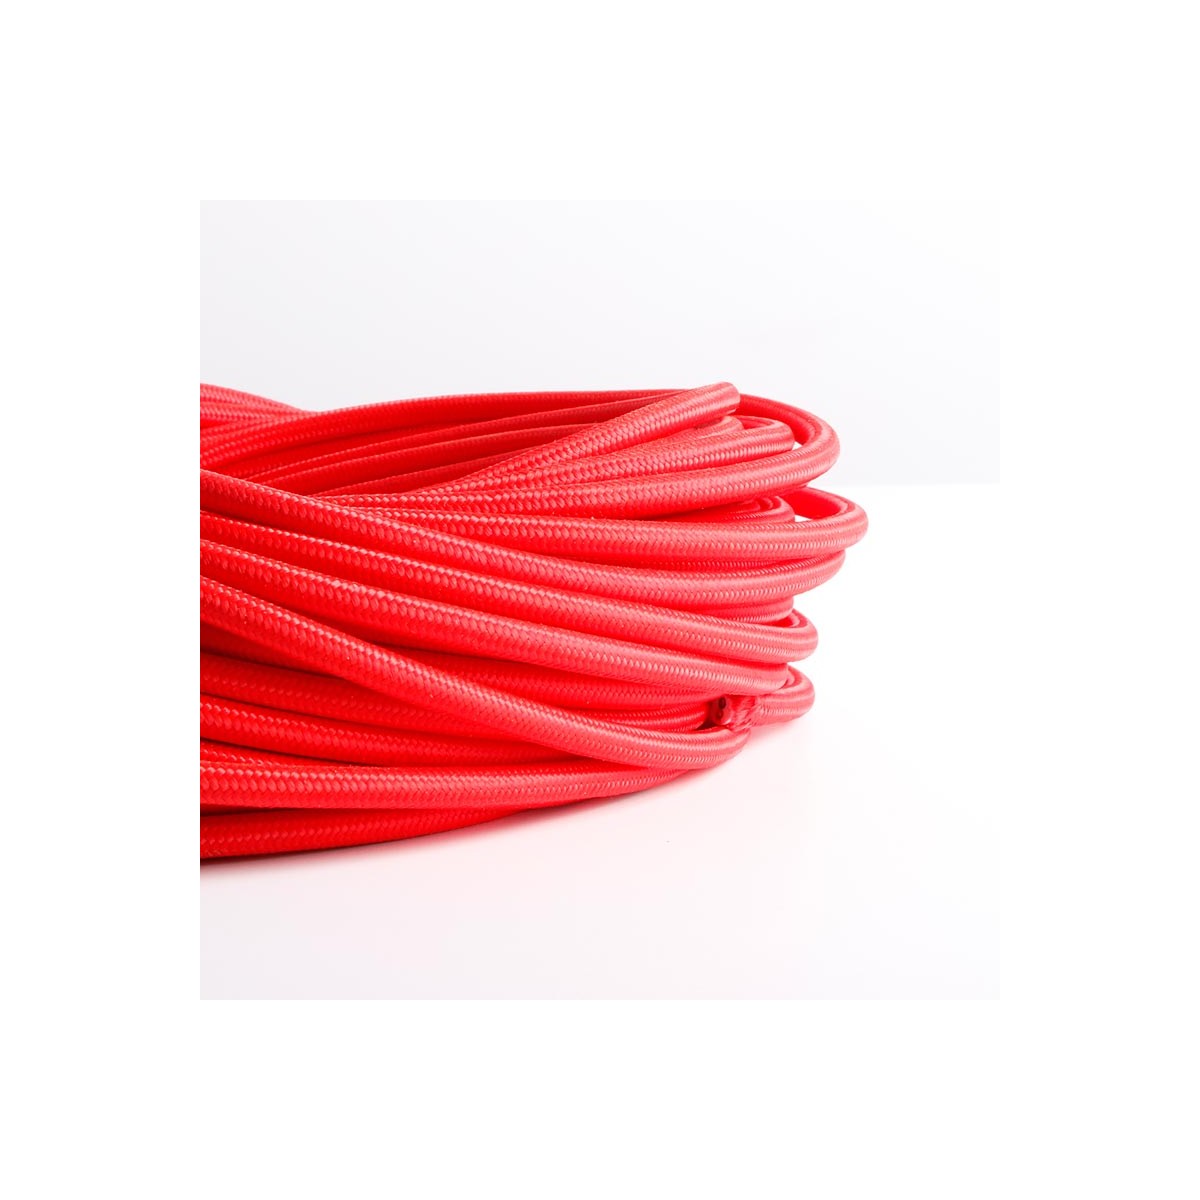 Cable eléctrico redondo revestido de algodón Rojo